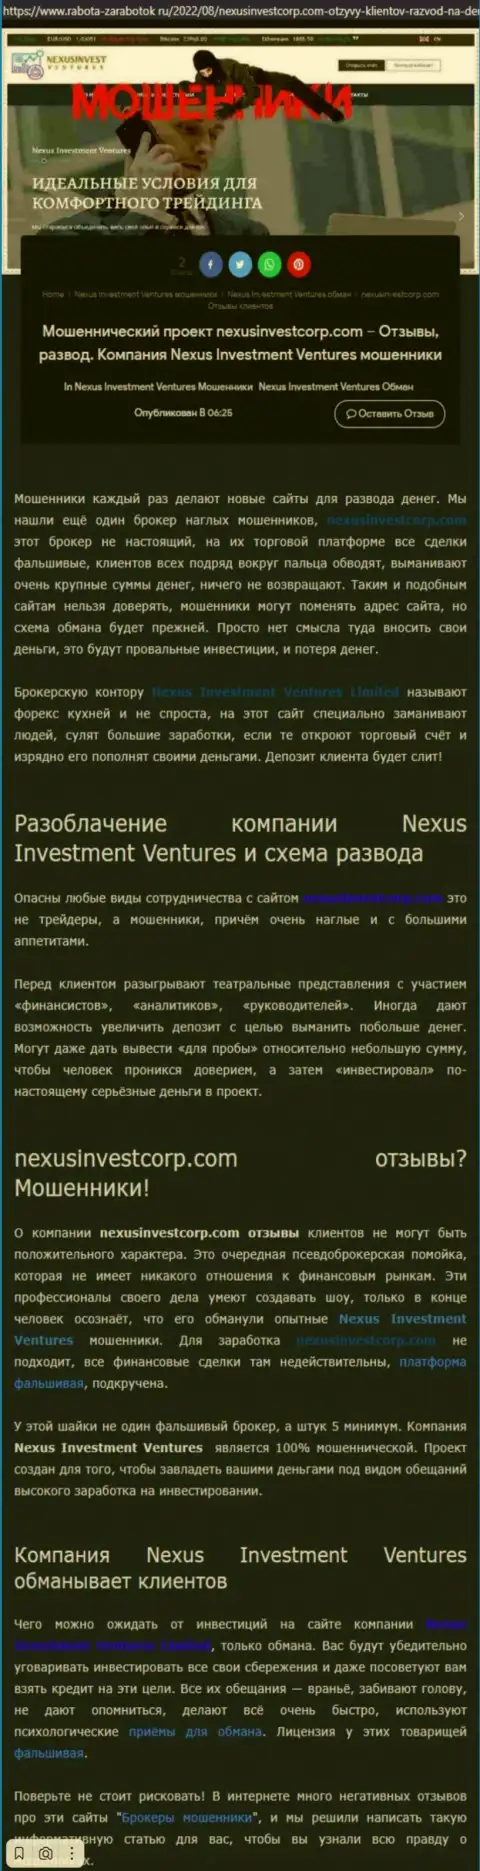 Если не желаете оказаться еще одной жертвой NexusInvestCorp Com, бегите от них подальше (обзор манипуляций)